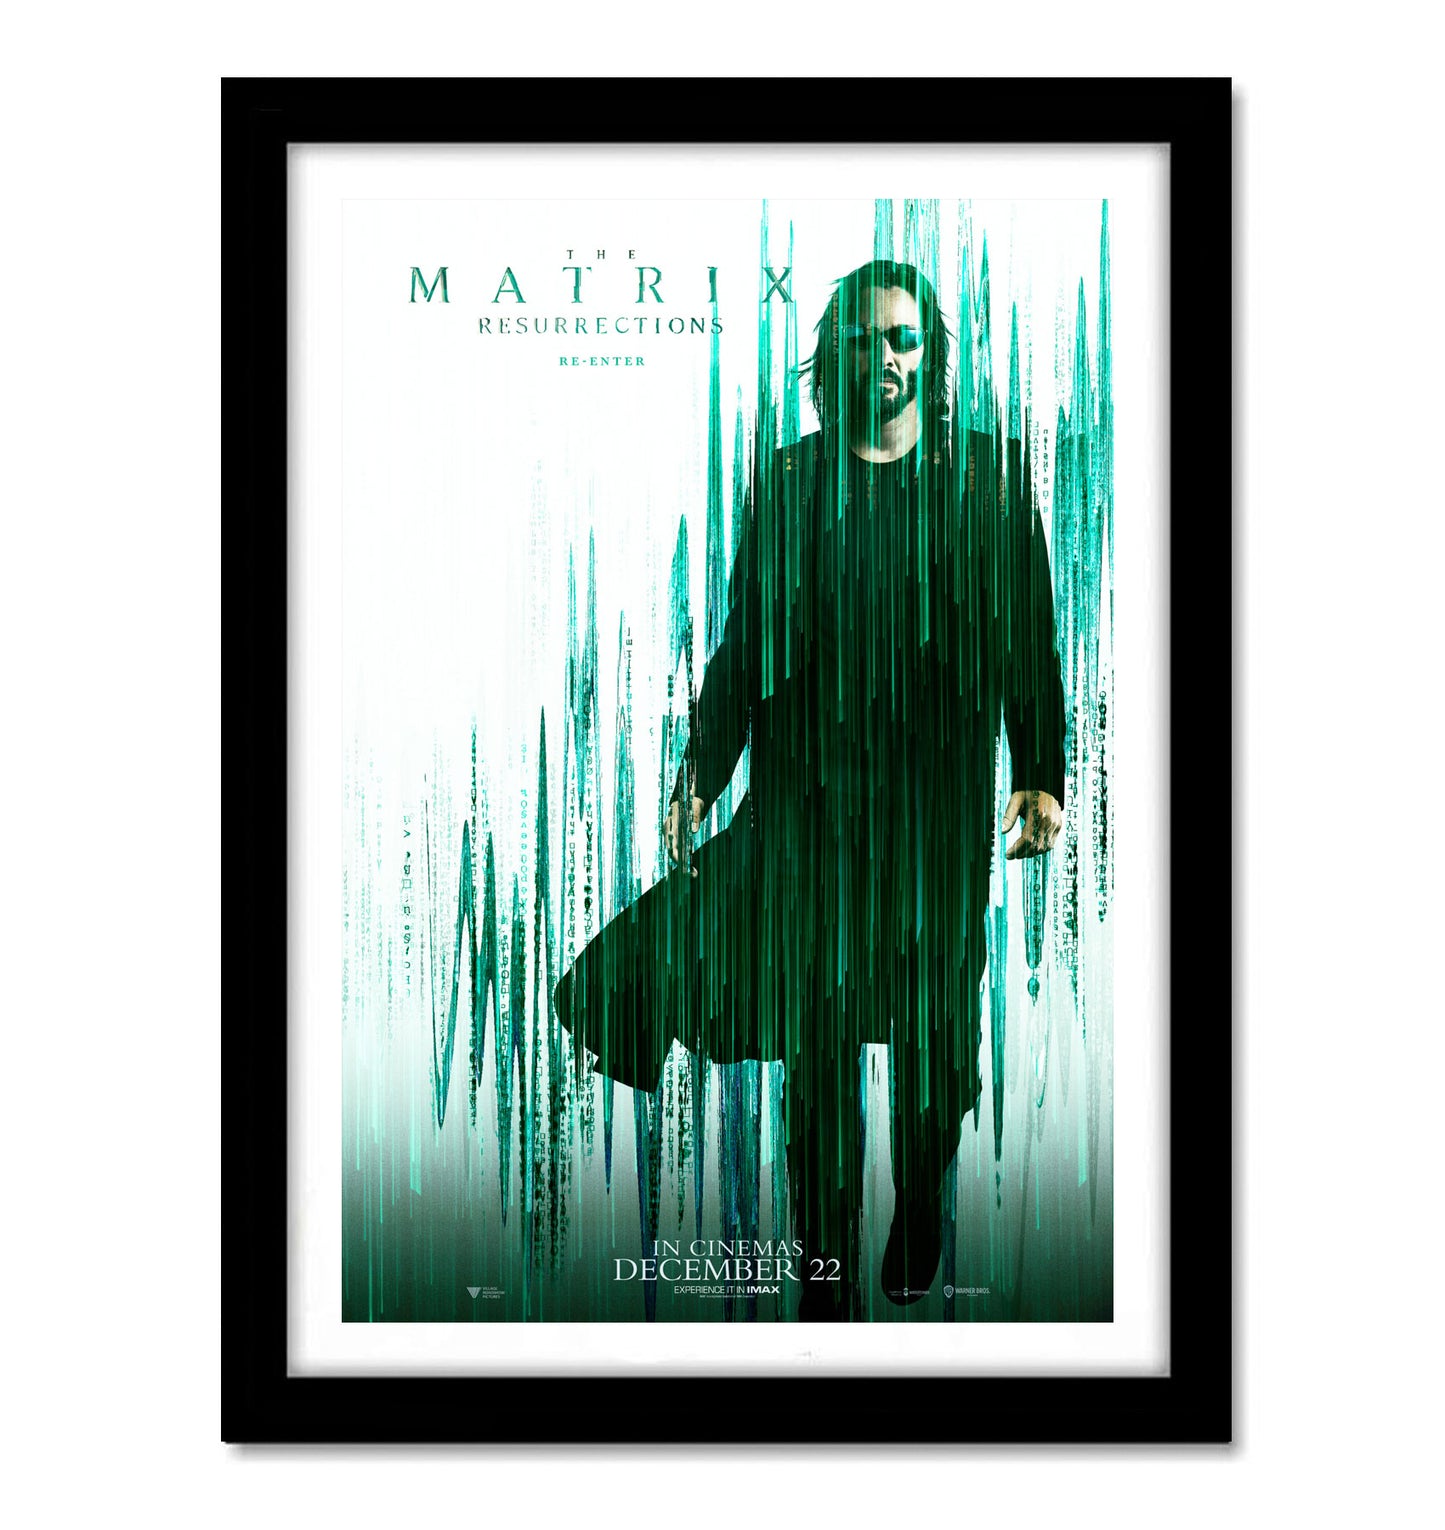 Matrix Movie Art work